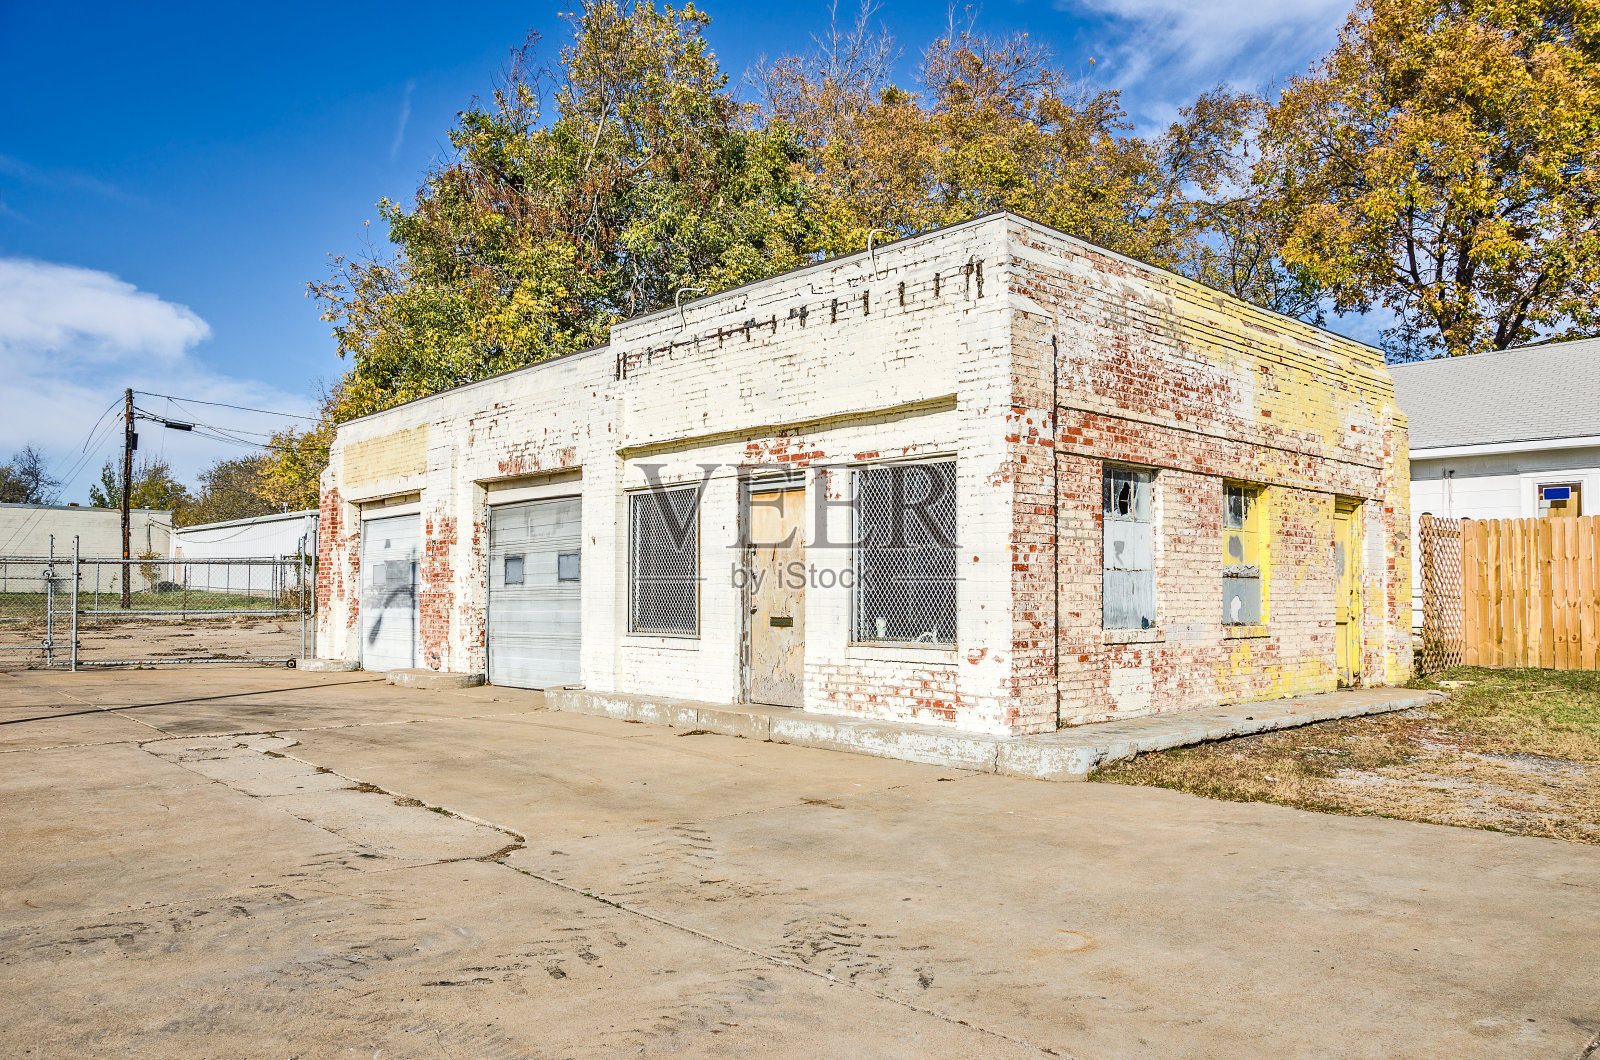 旧油漆砖服务站照片摄影图片